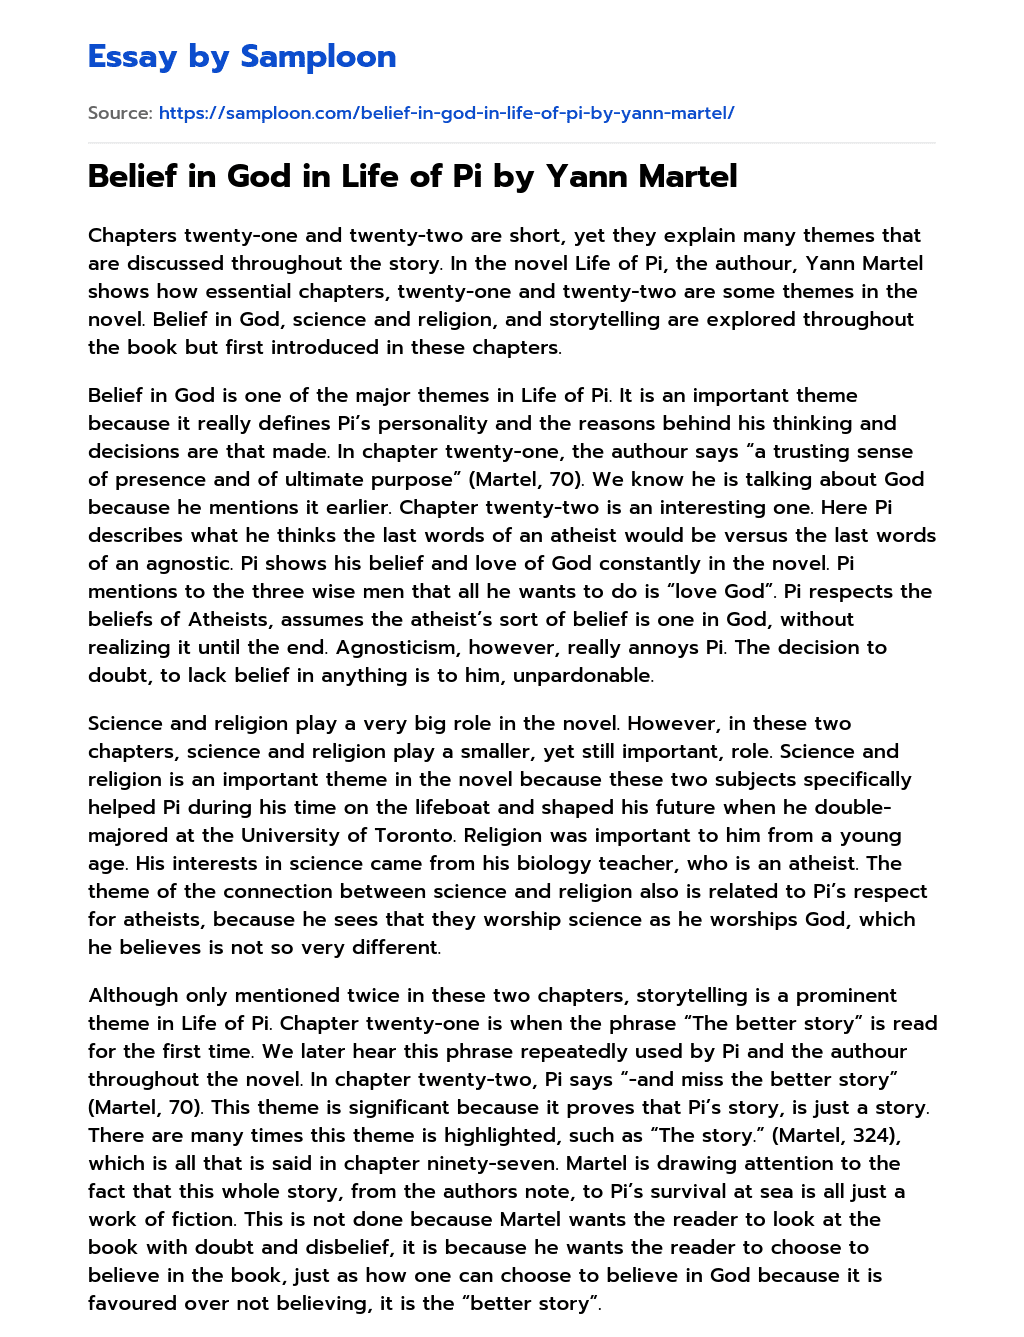 Belief in God in Life of Pi by Yann Martel essay